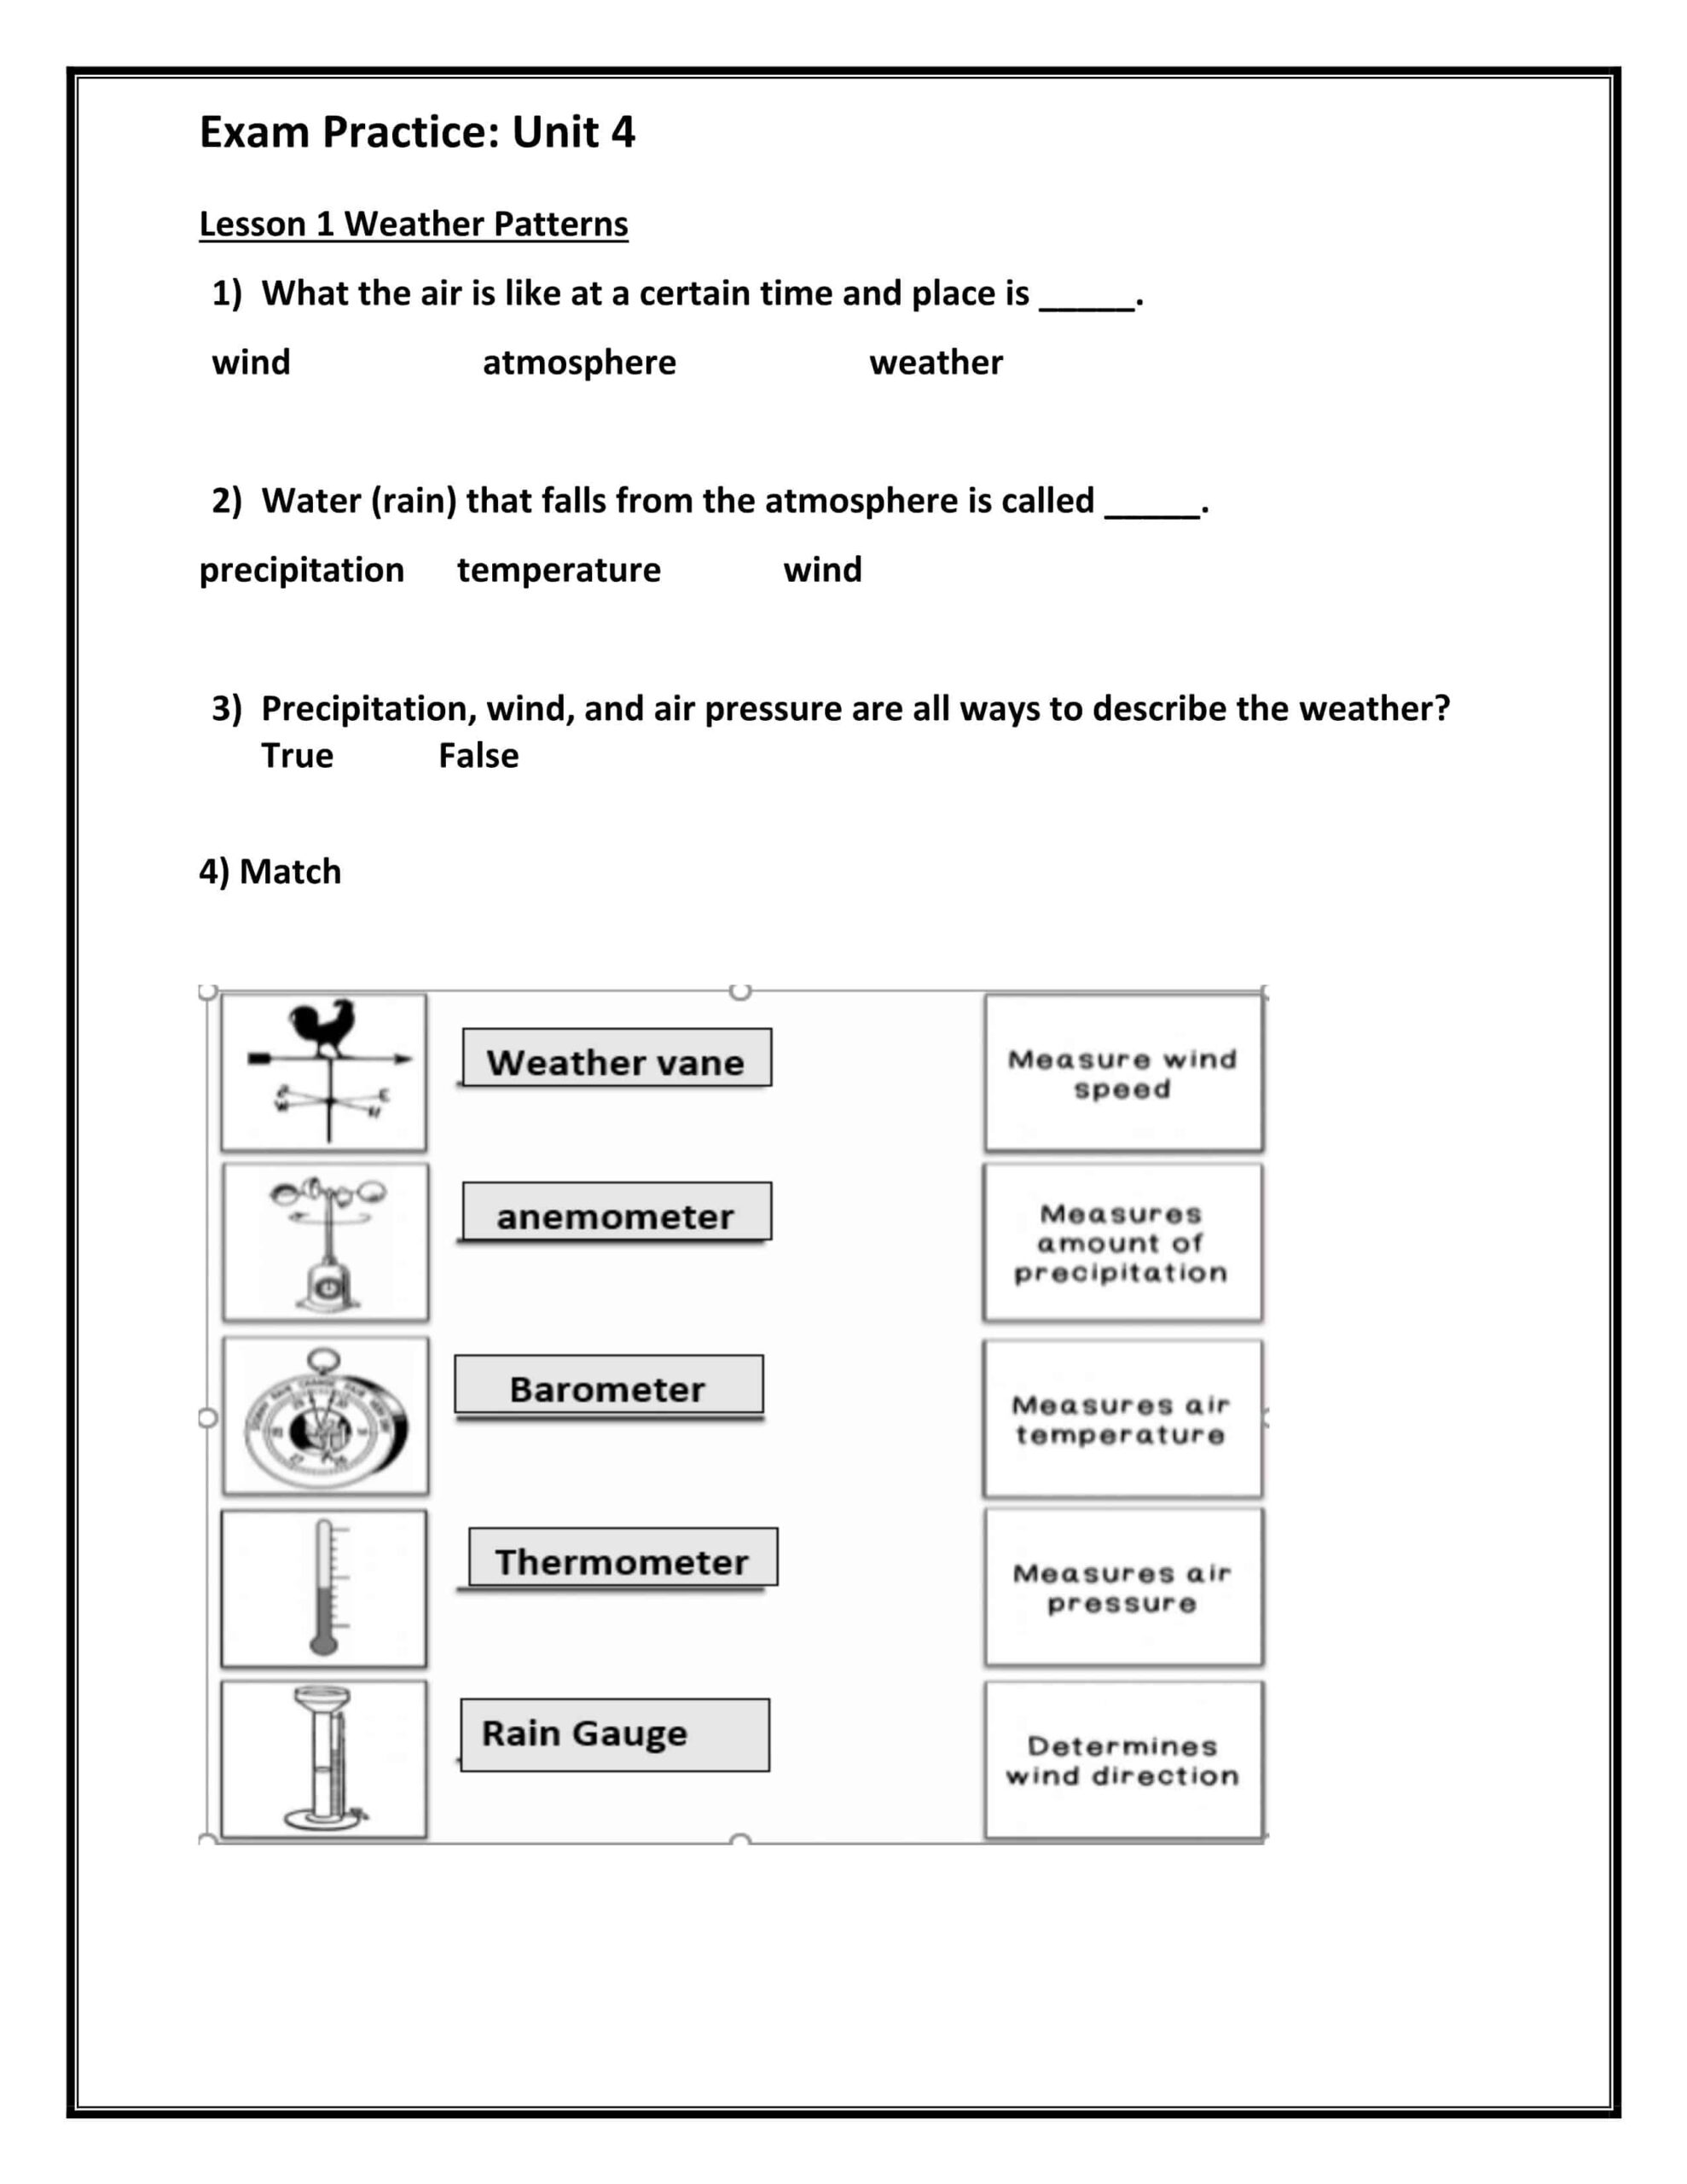 أوراق عمل Exam Practice Unit 4 العلوم المتكاملة الصف الثالث